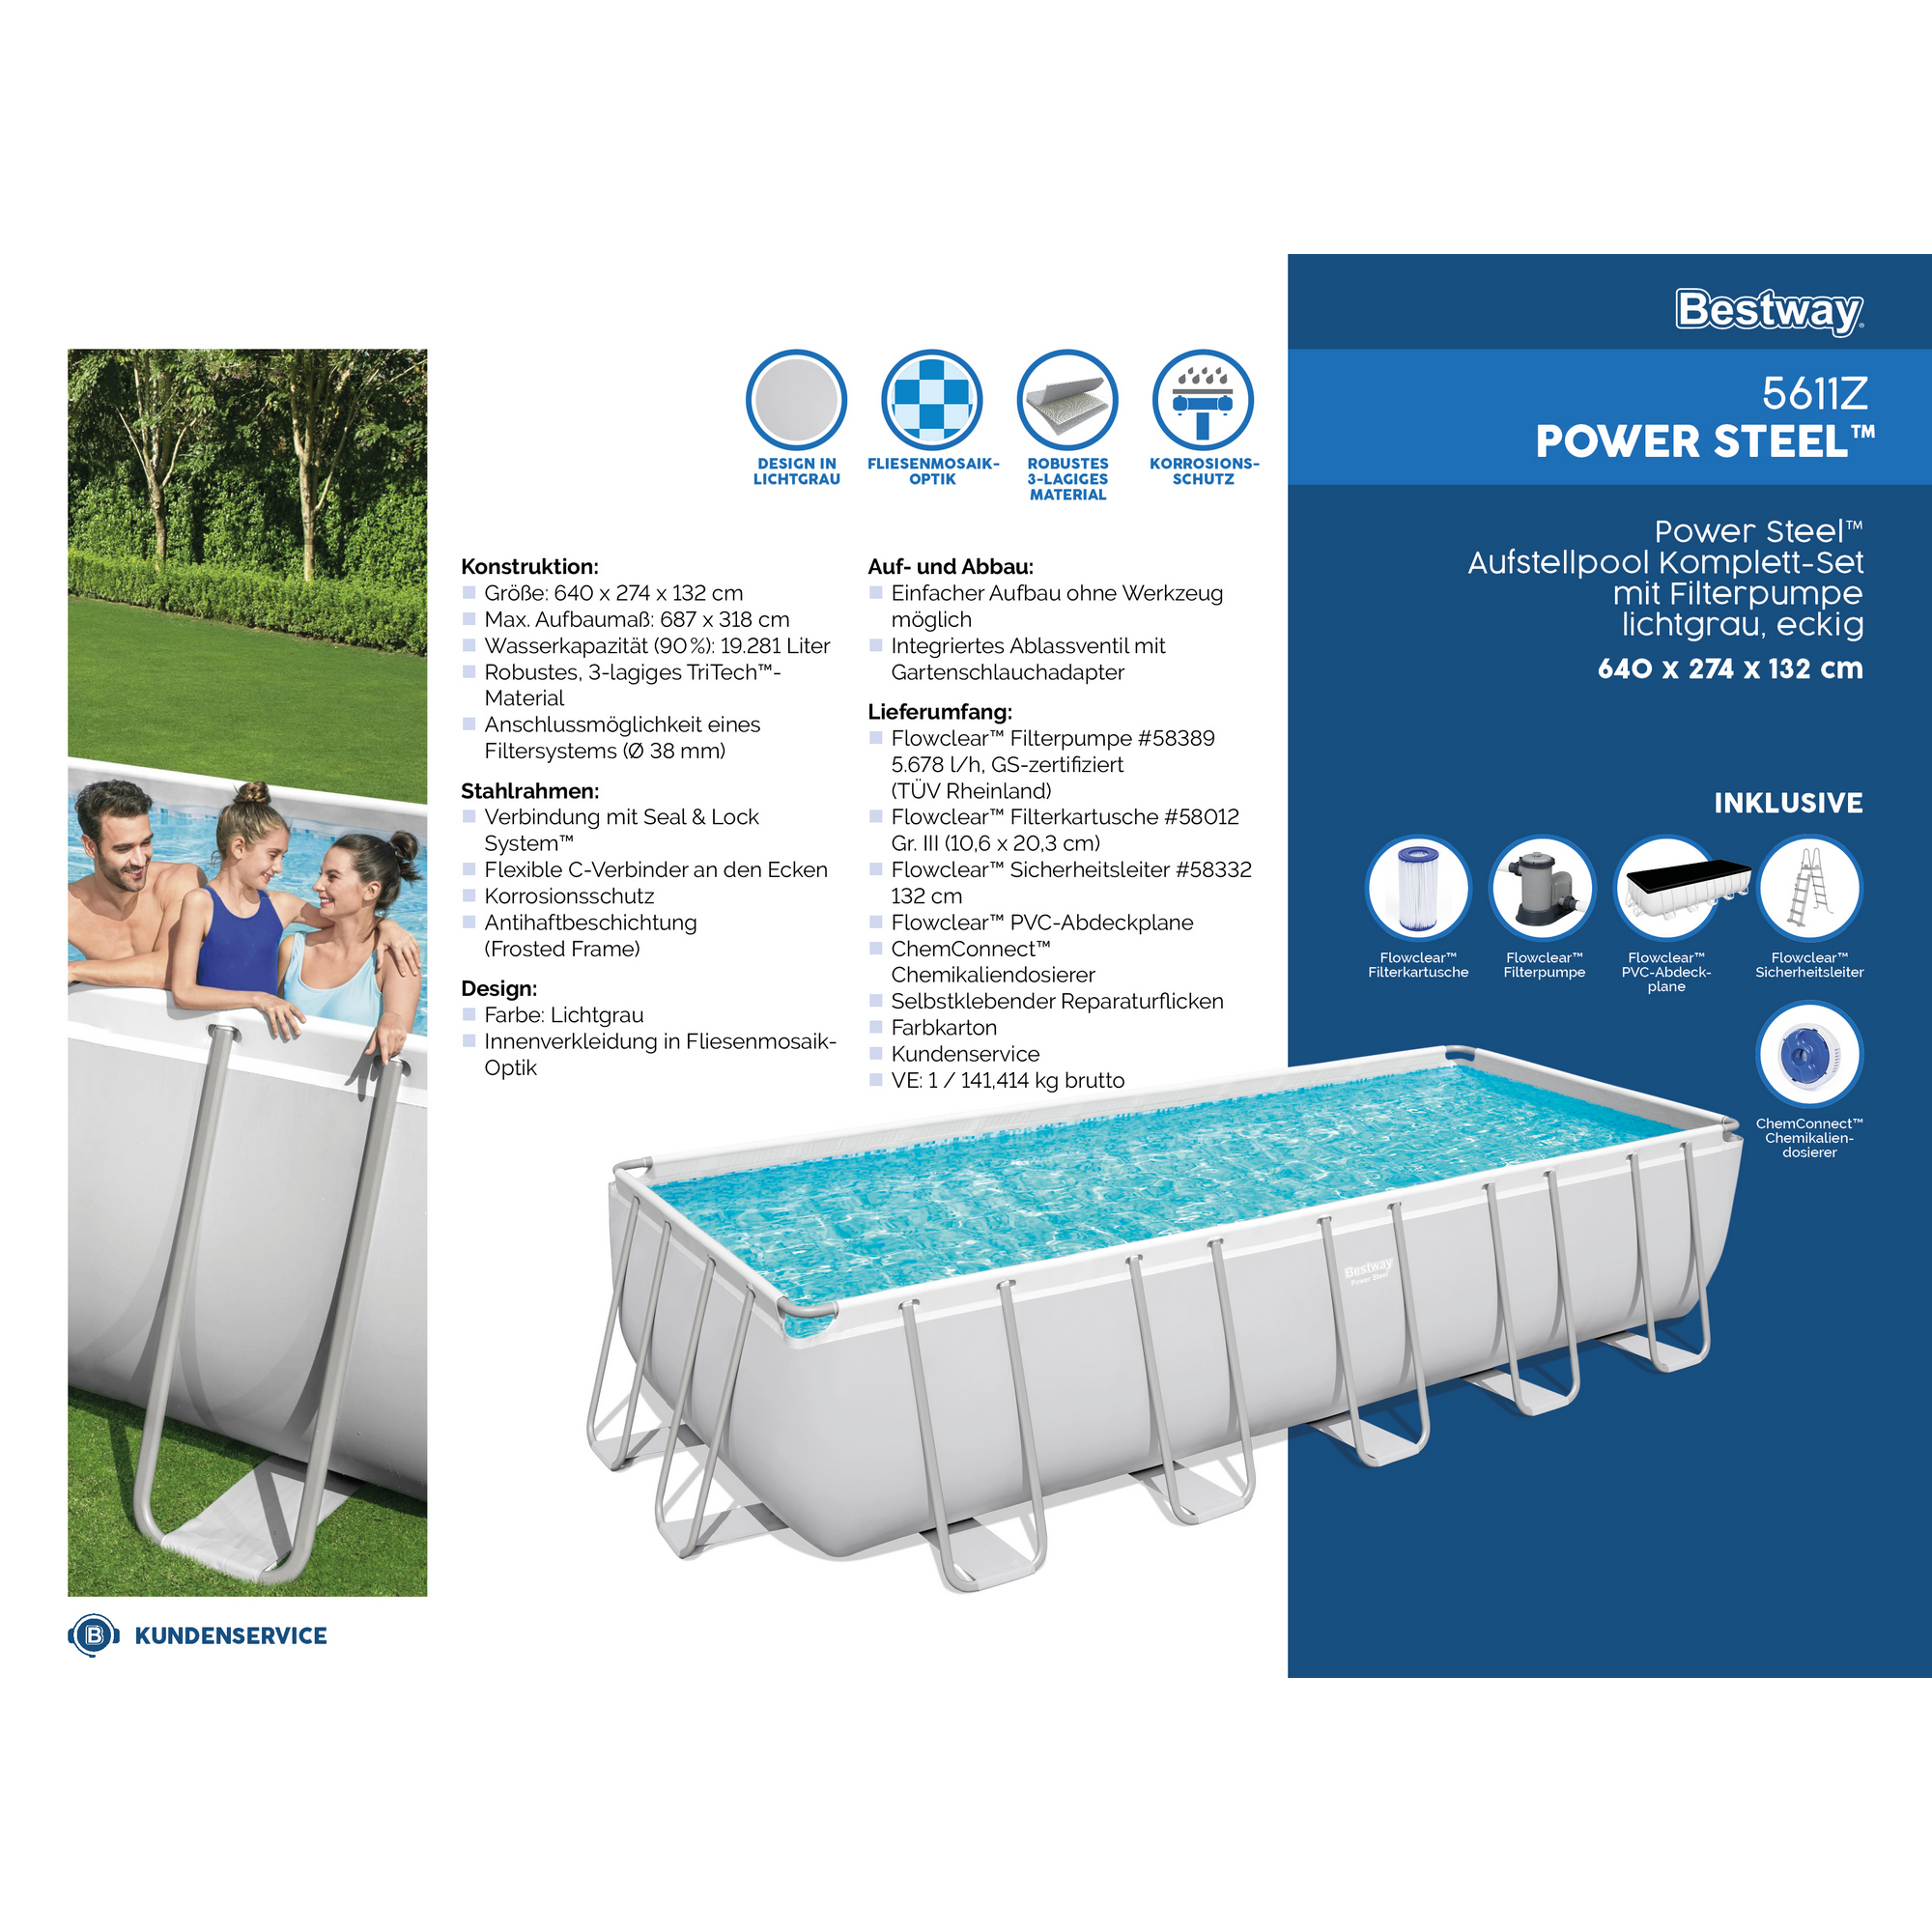 Frame-Pool-Set 'Power Steel' 640 x 274 x 132 cm mit Sicherheitsleiter und Kartuschenfilter + product picture